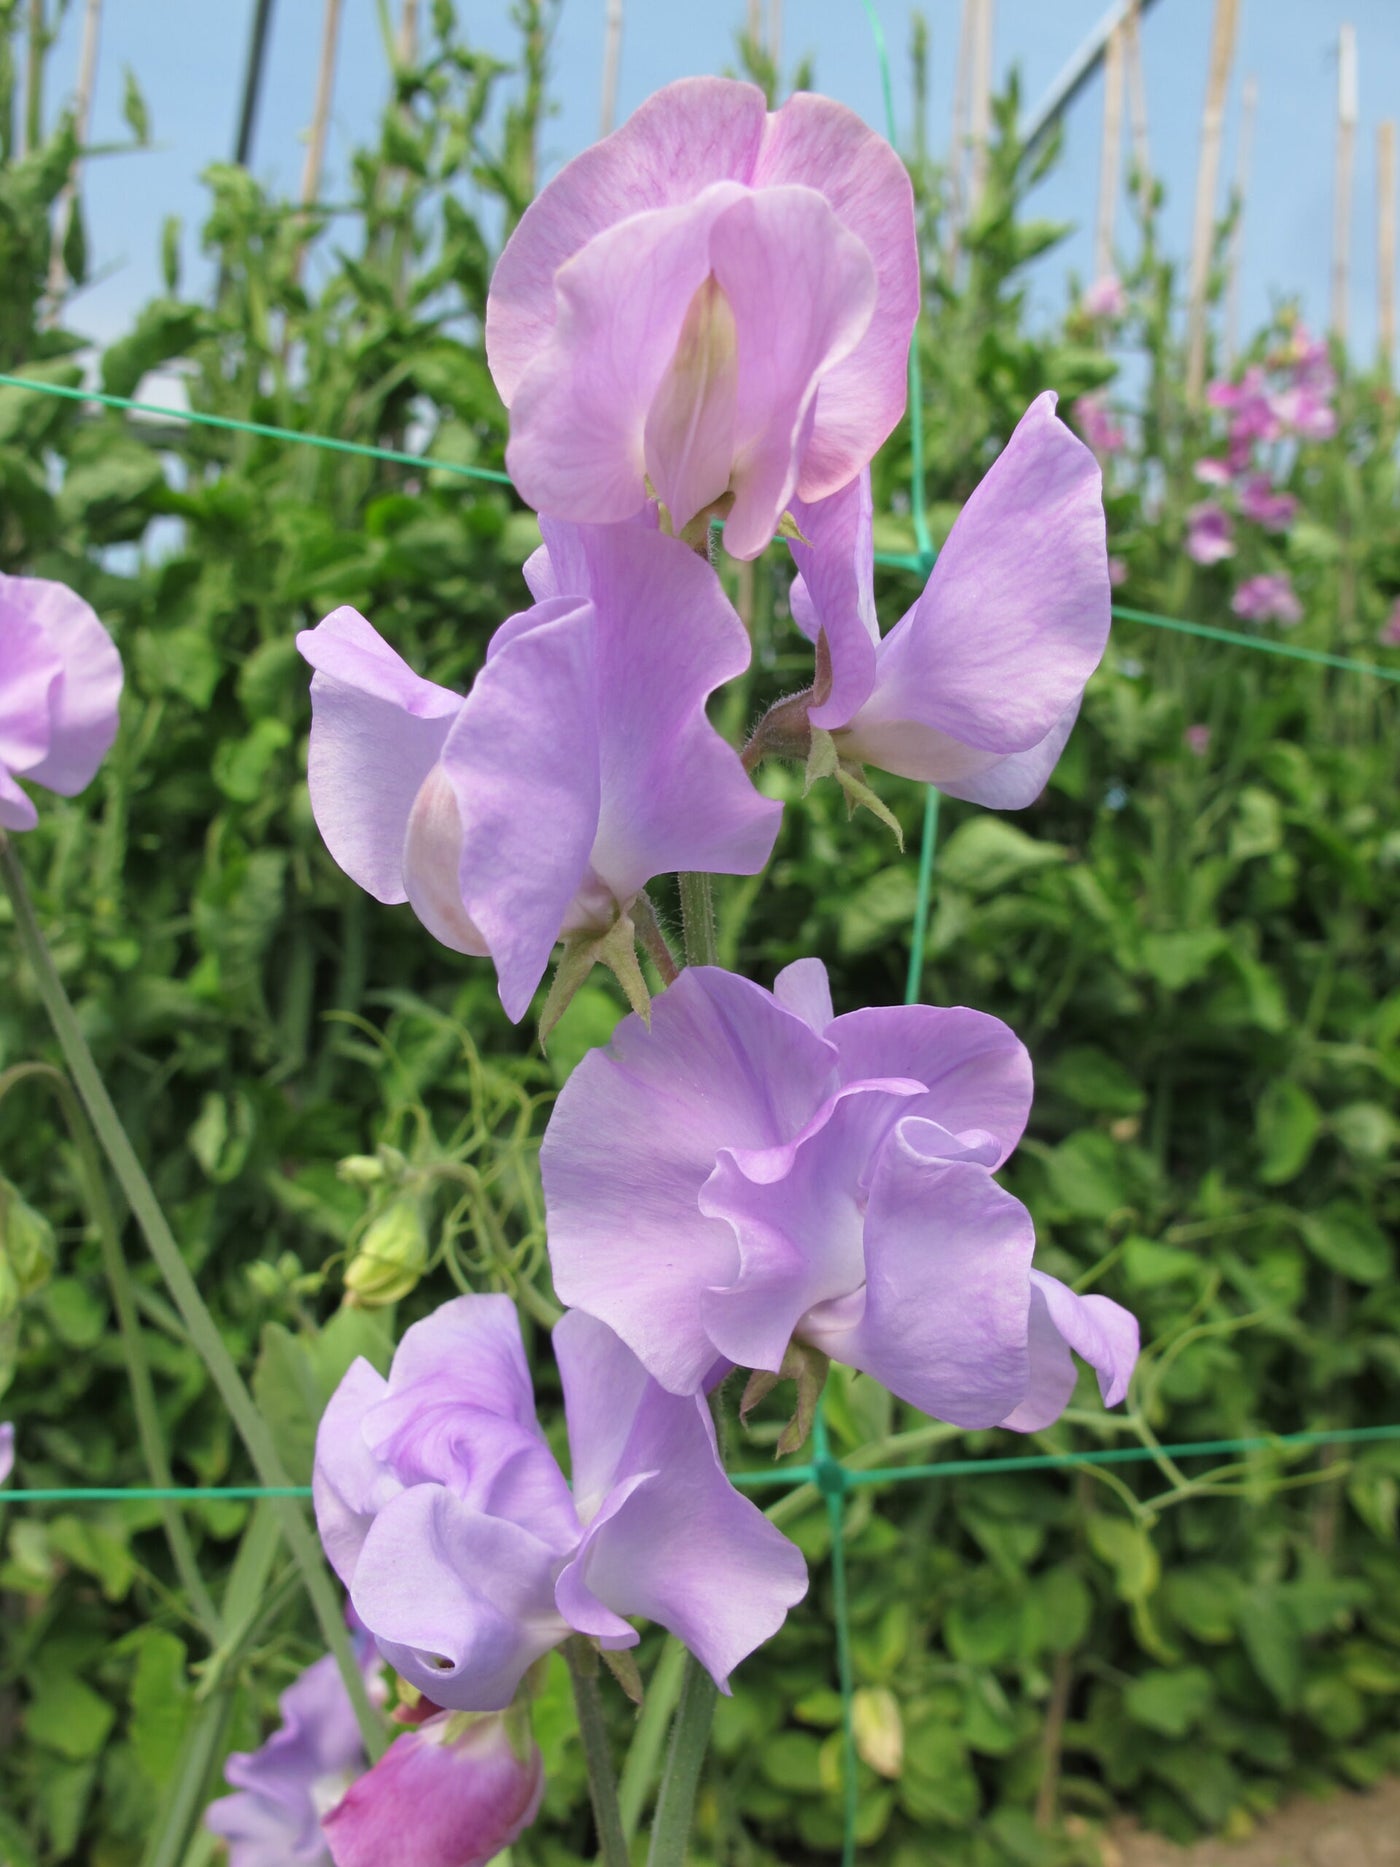 Lathyrus odoratus :: Sweet Pea Seed | Sunshine Lavender